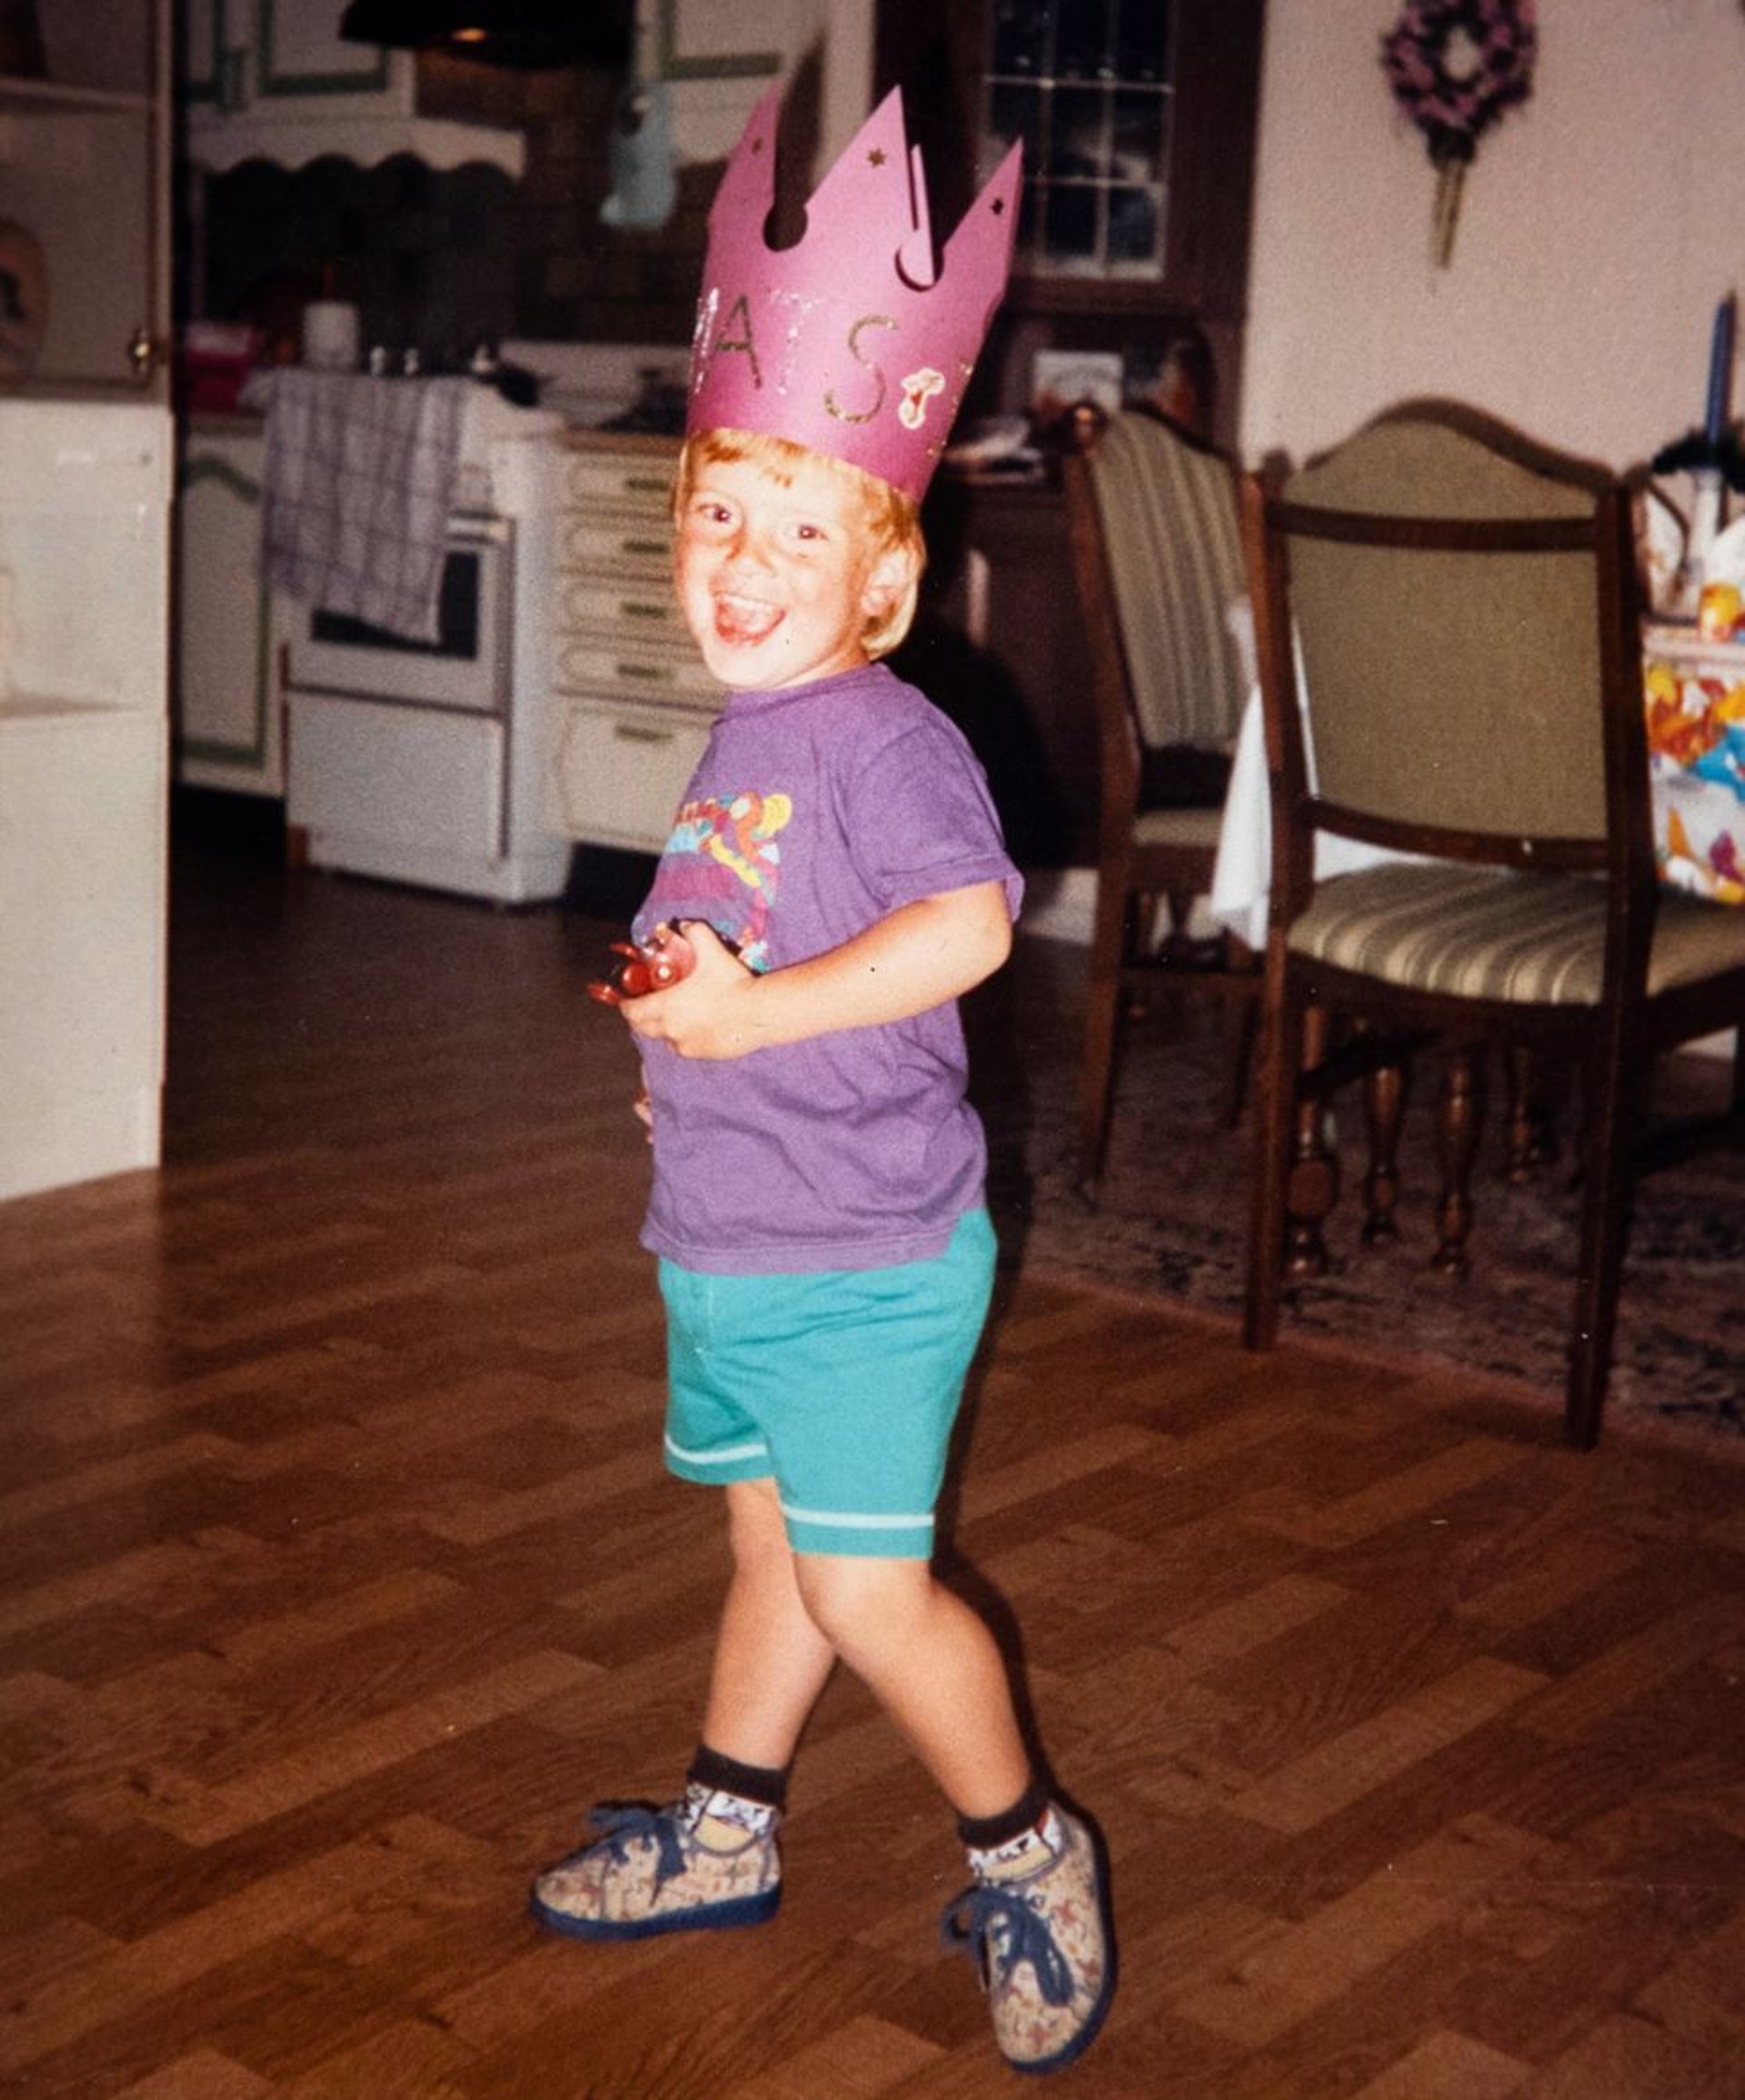 1993年，僅4歲的Mats在生日會照片上開心歡笑，可惜好景不常。